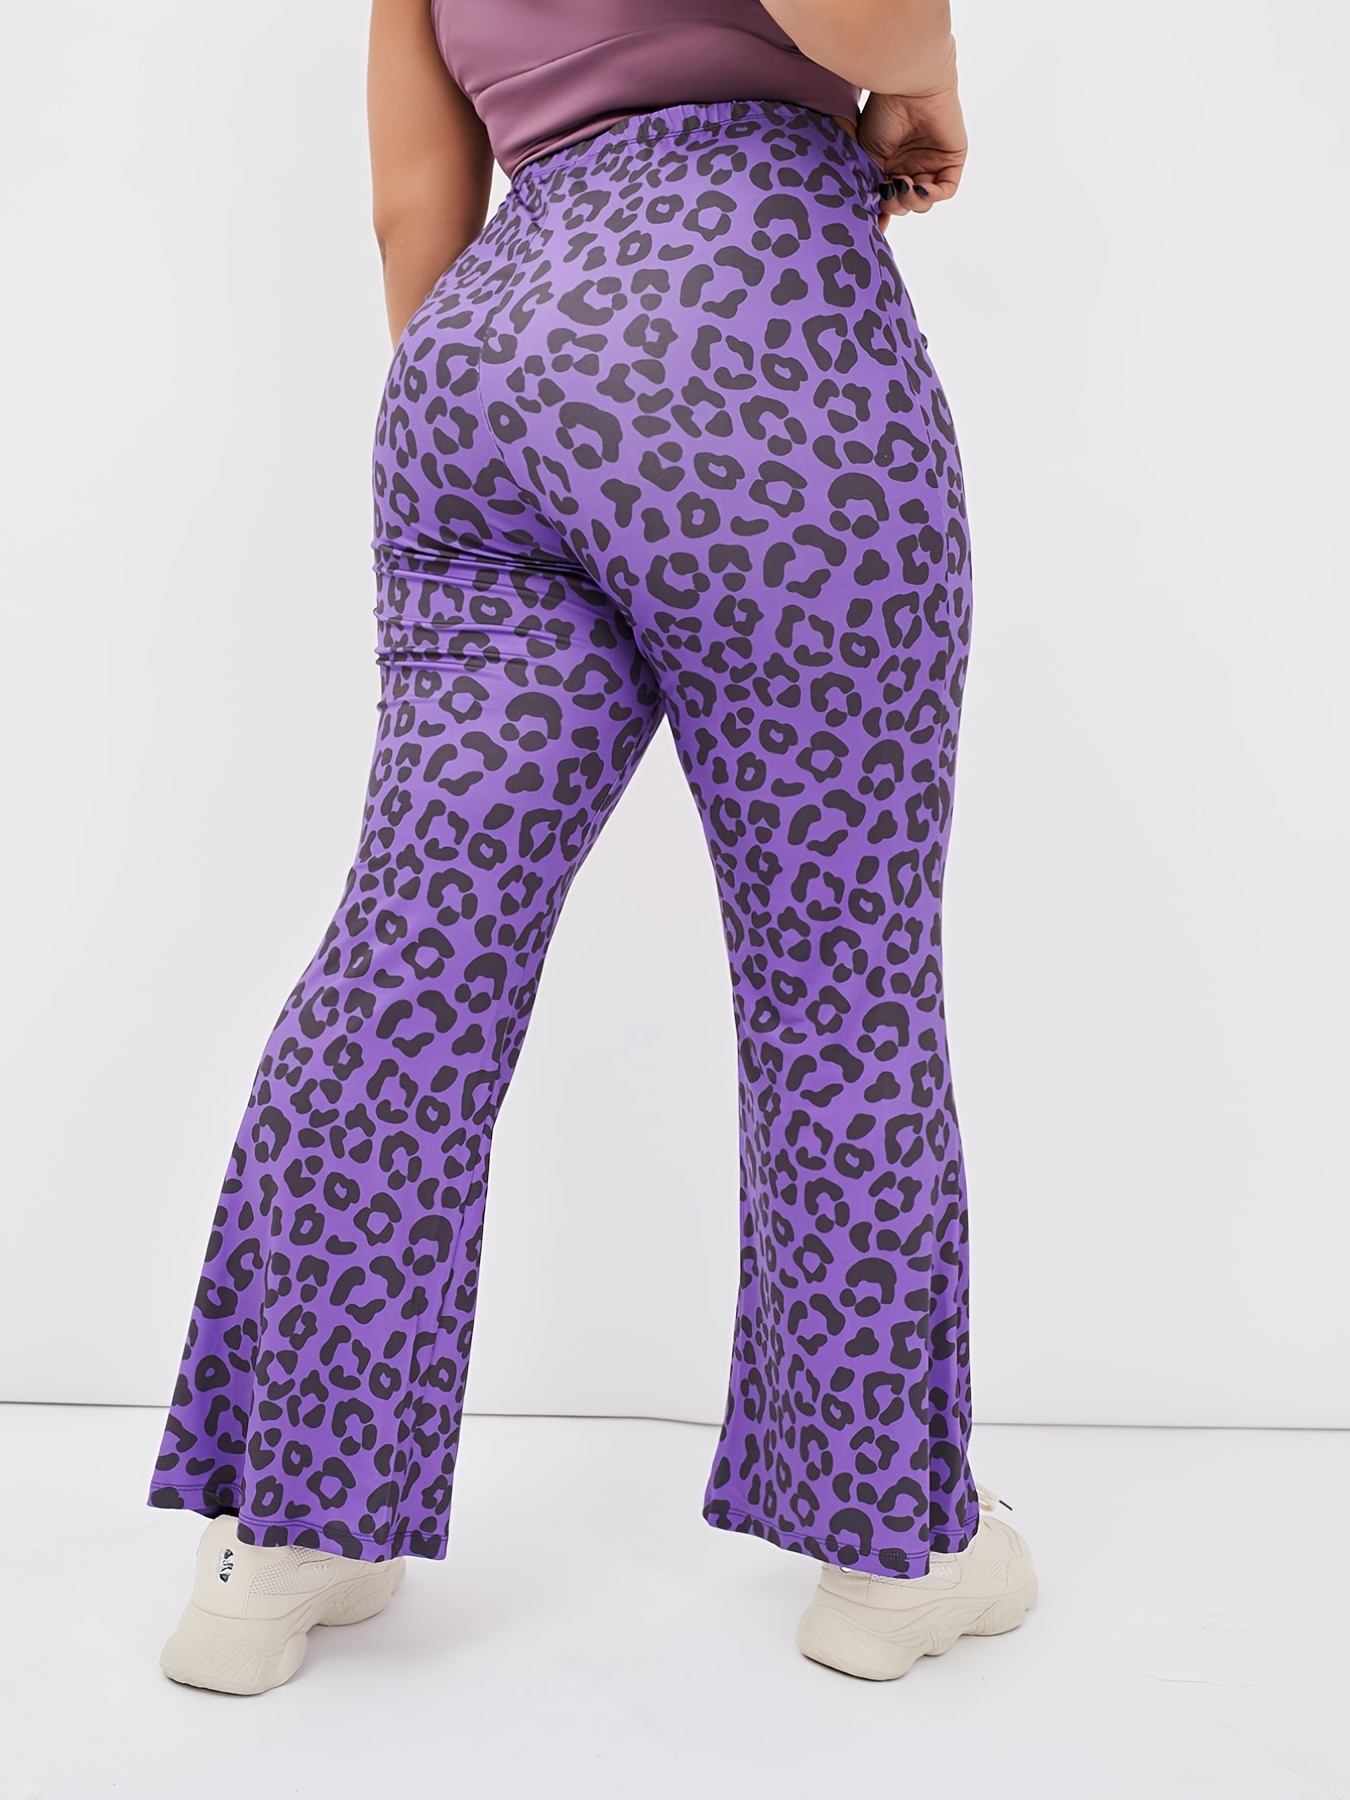 Leopard Print Flare Leggings for Women High Waist Elastic Bell